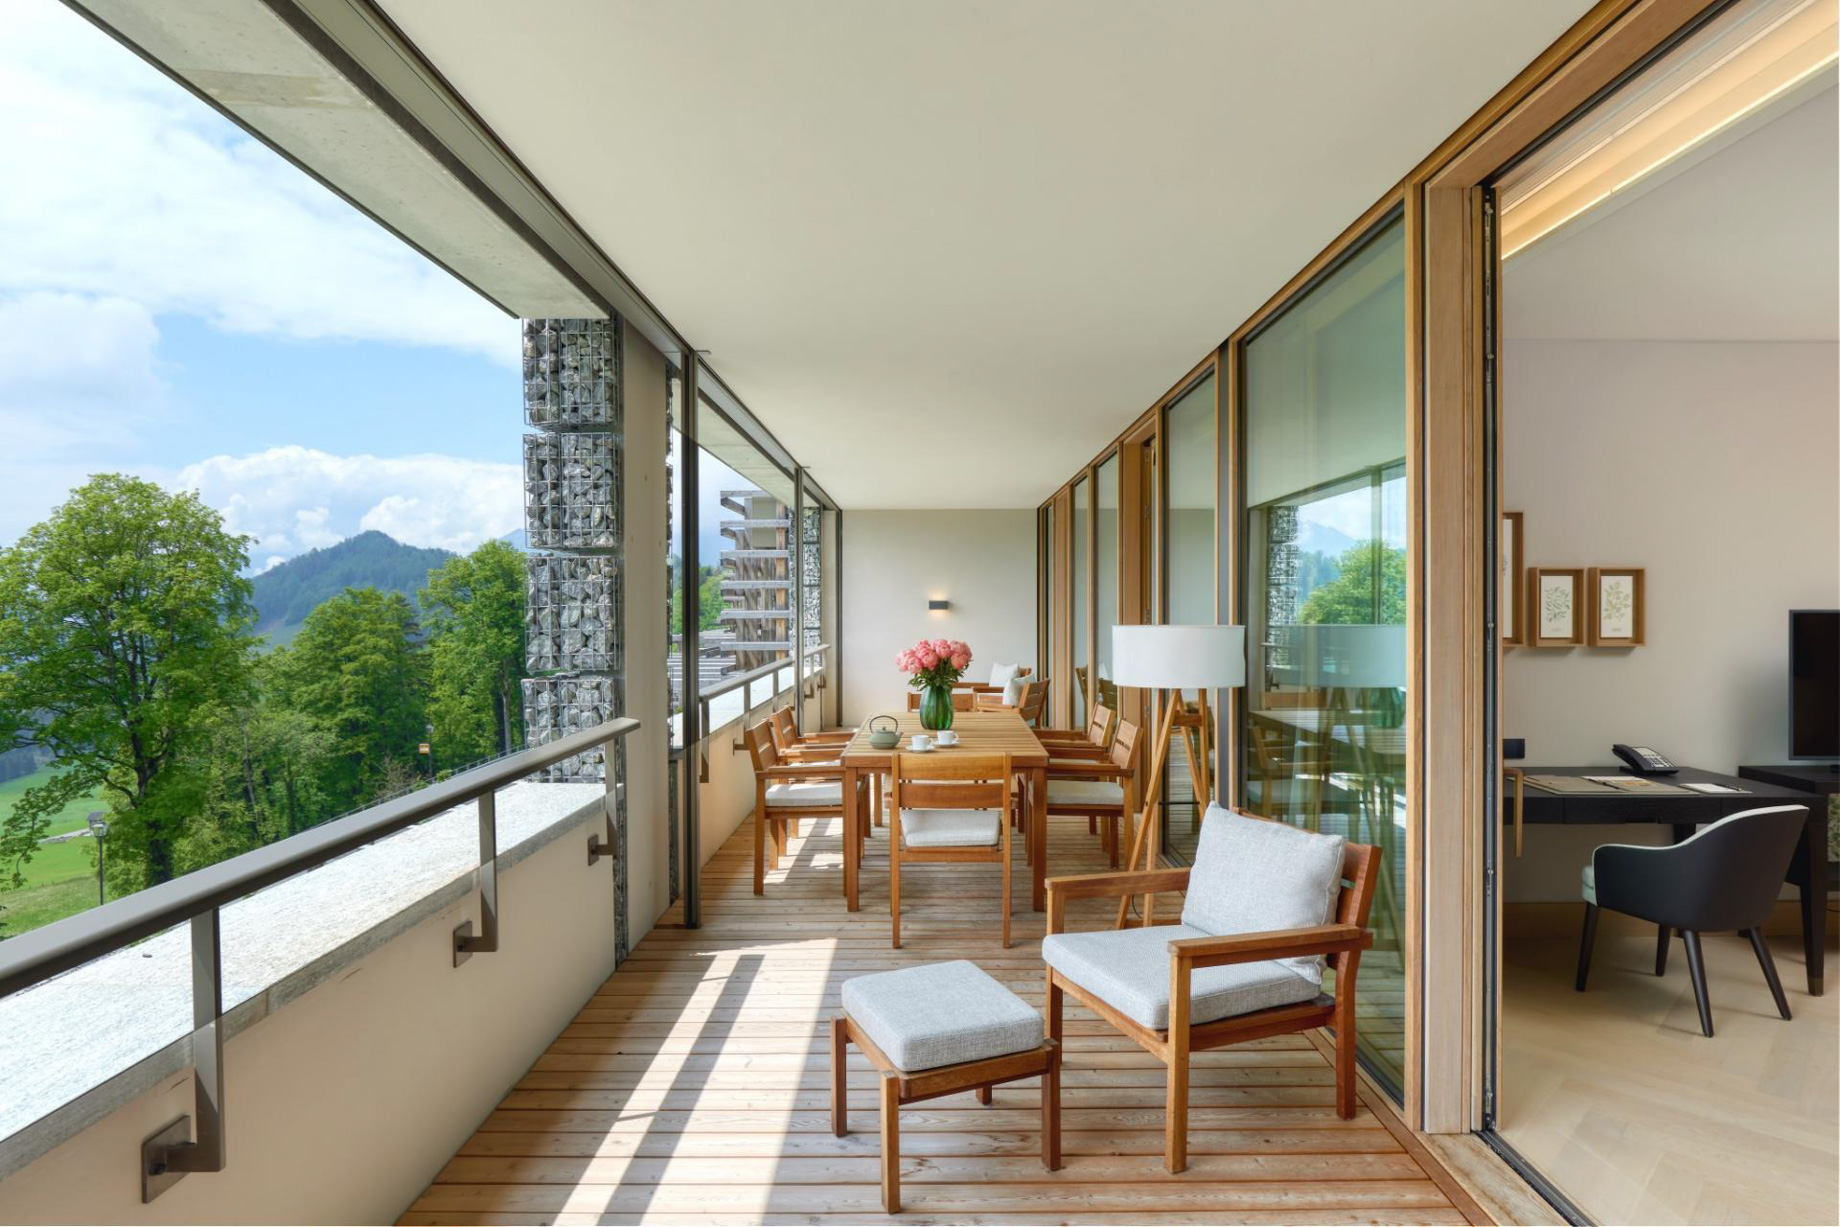 Waldhotel - Burgenstock Hotels & Resort - Obburgen, Switzerland - Deluxe Suite Deck